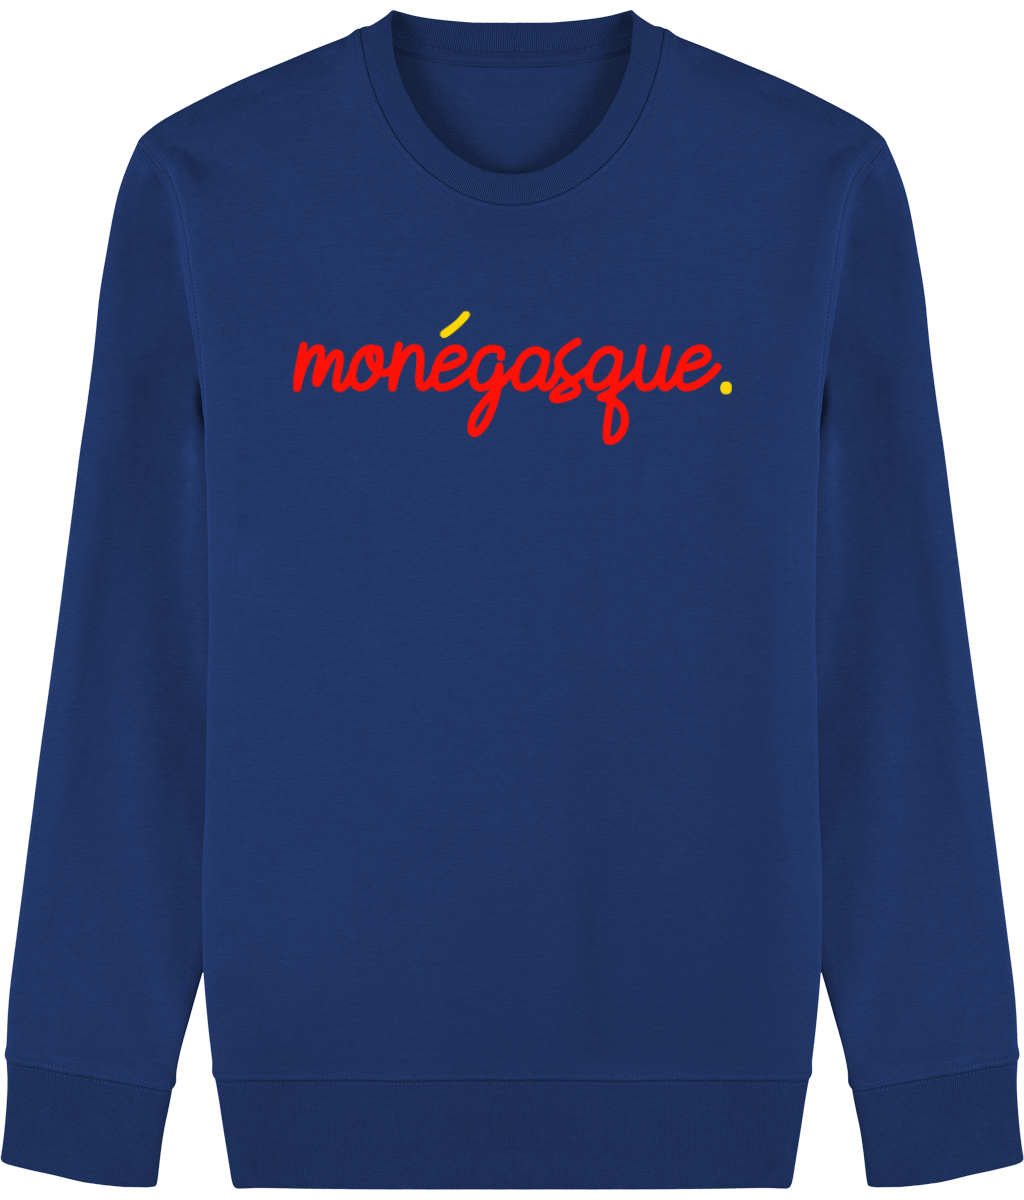 Monegasque sweatshirt